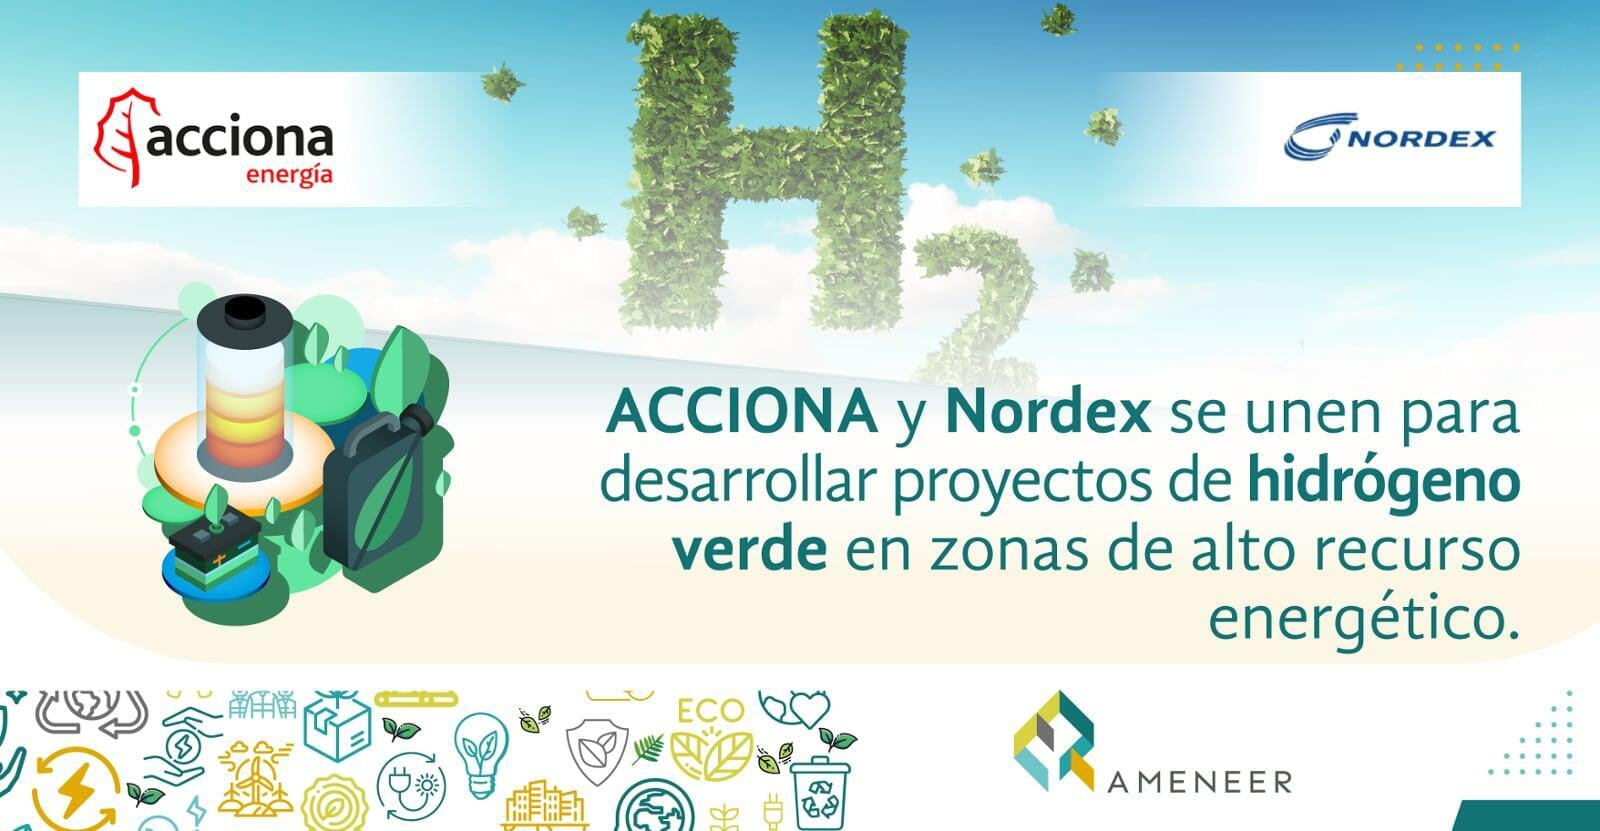 ACCIONA y Nordex se unen para desarrollar proyectos de hidrógeno verde en zonas de alto recurso energético